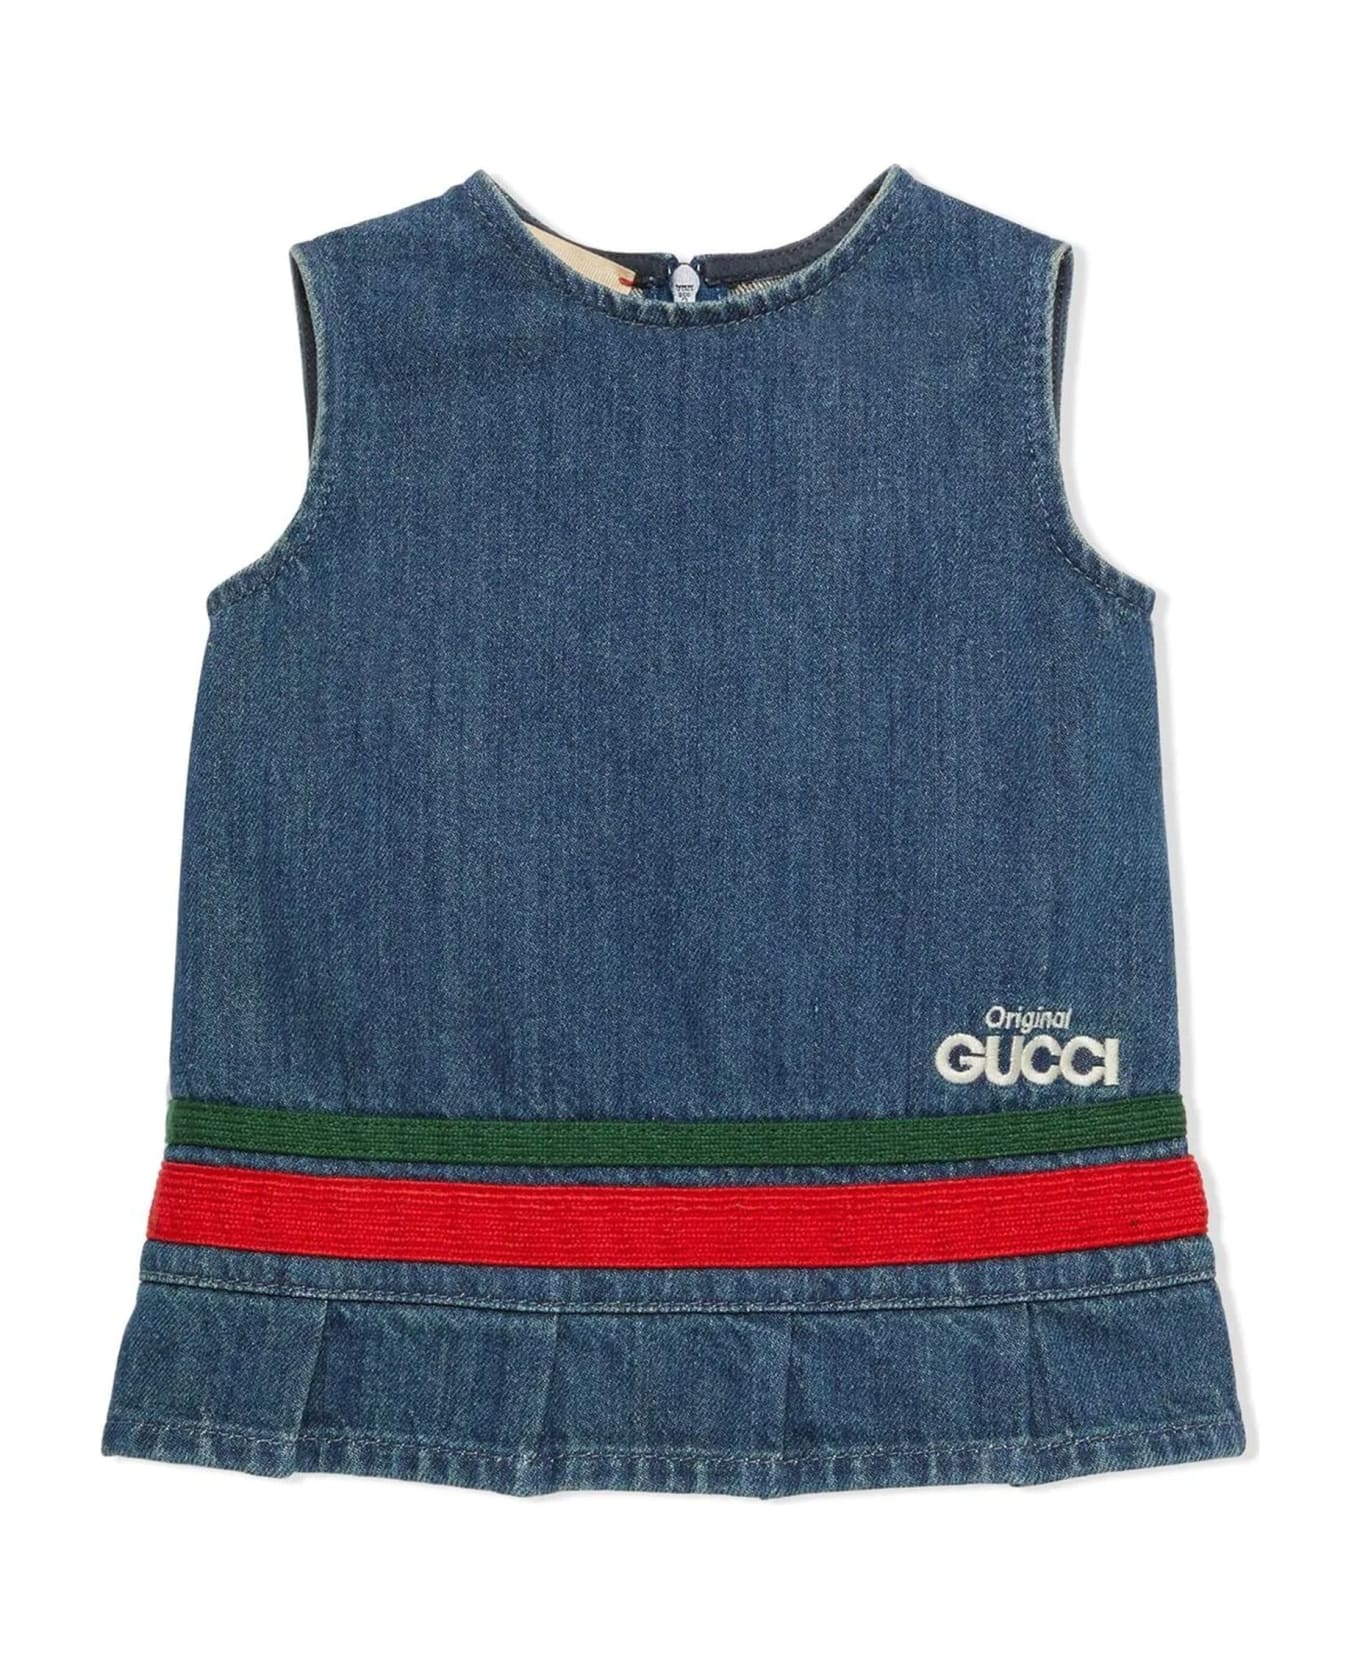 Gucci Kids Dresses Denim - Denim